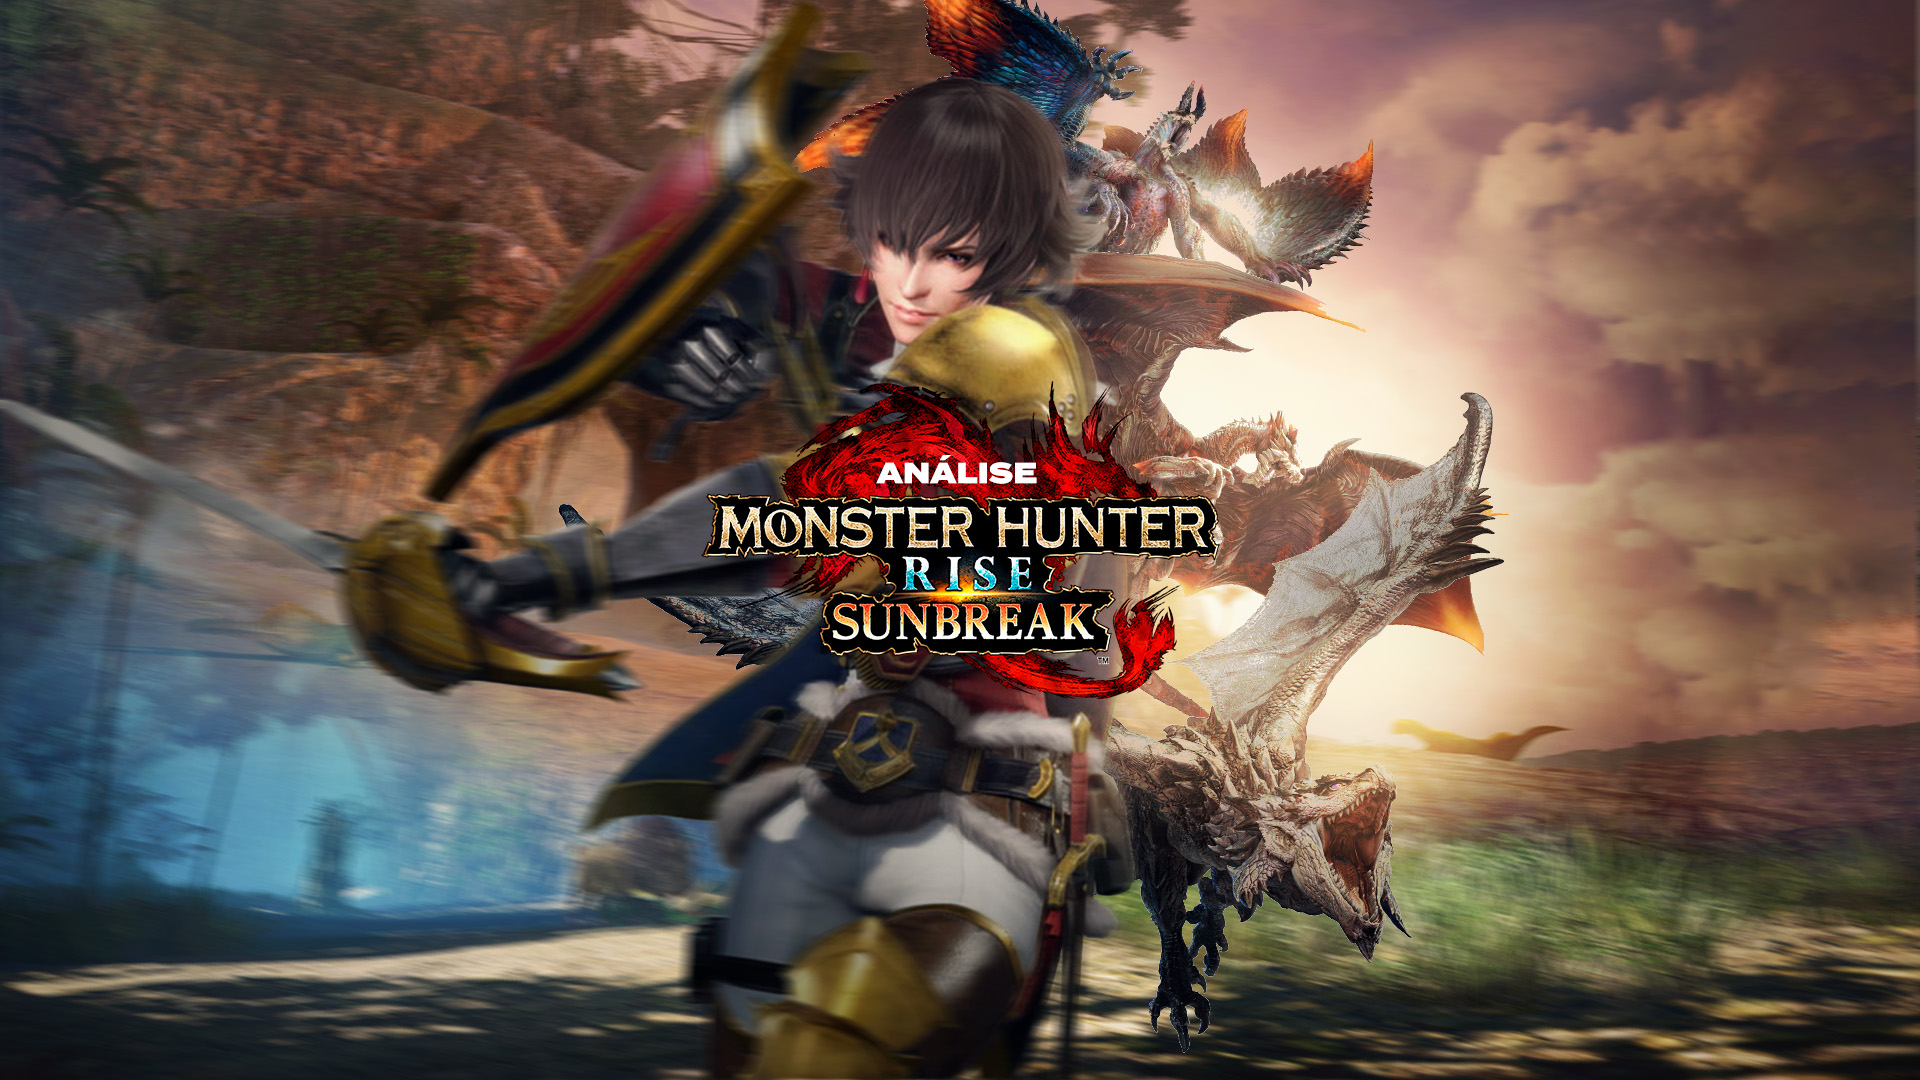 Nova foto mostra que o filme de Monster Hunter não parece muito com a  franquia